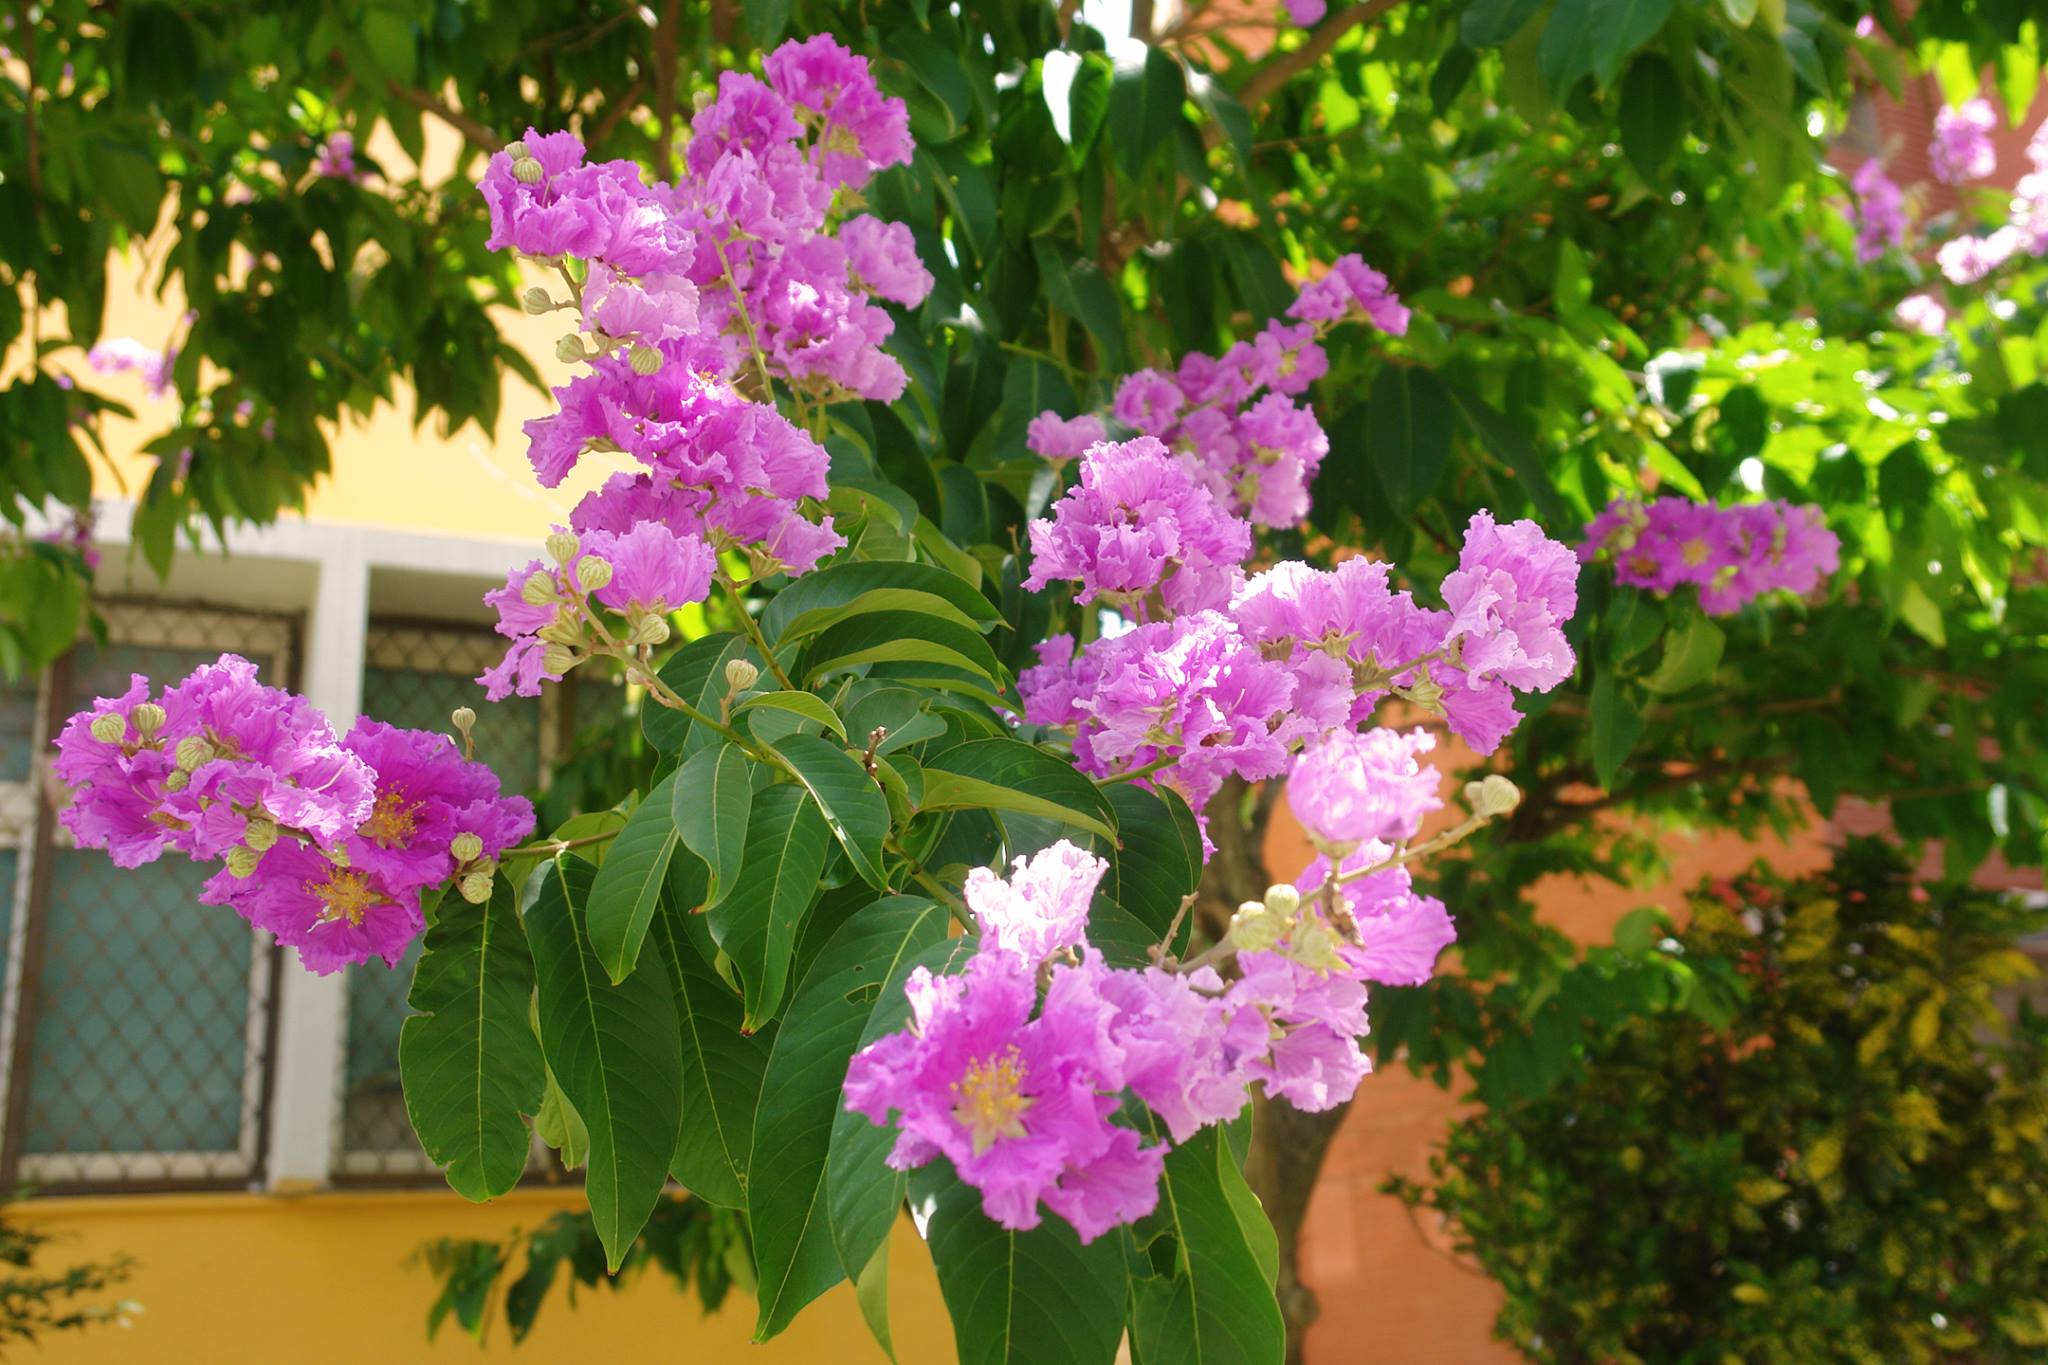 紫薇花盛開，皺褶狀的淡紫色花瓣在枝頭上綻放，隨風搖曳，十分美麗